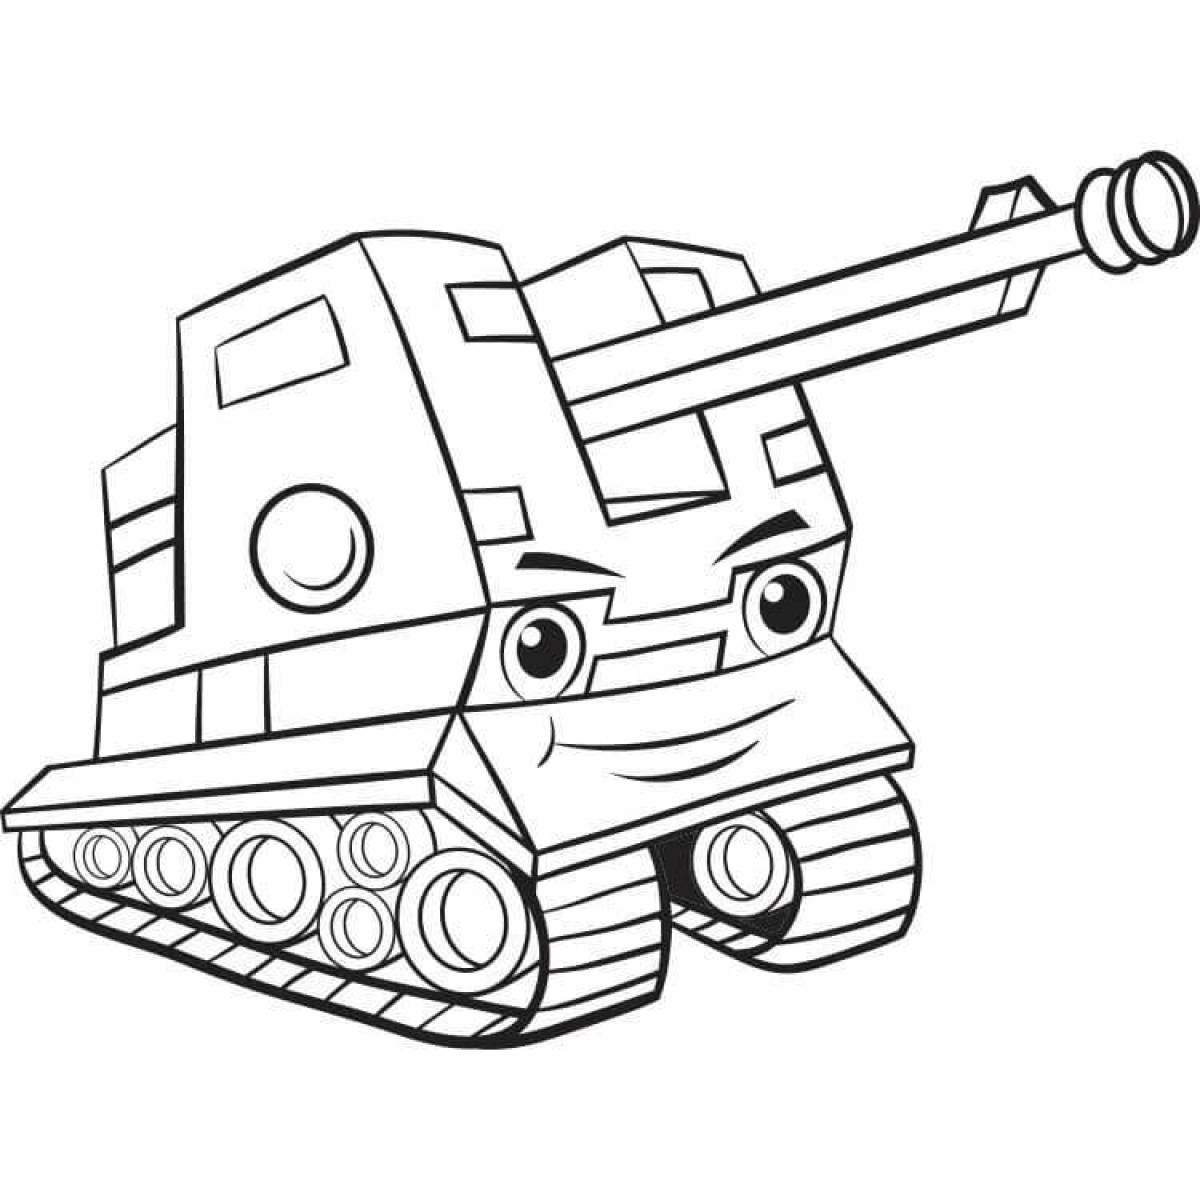 Замысловатый танк кв 44 раскраска